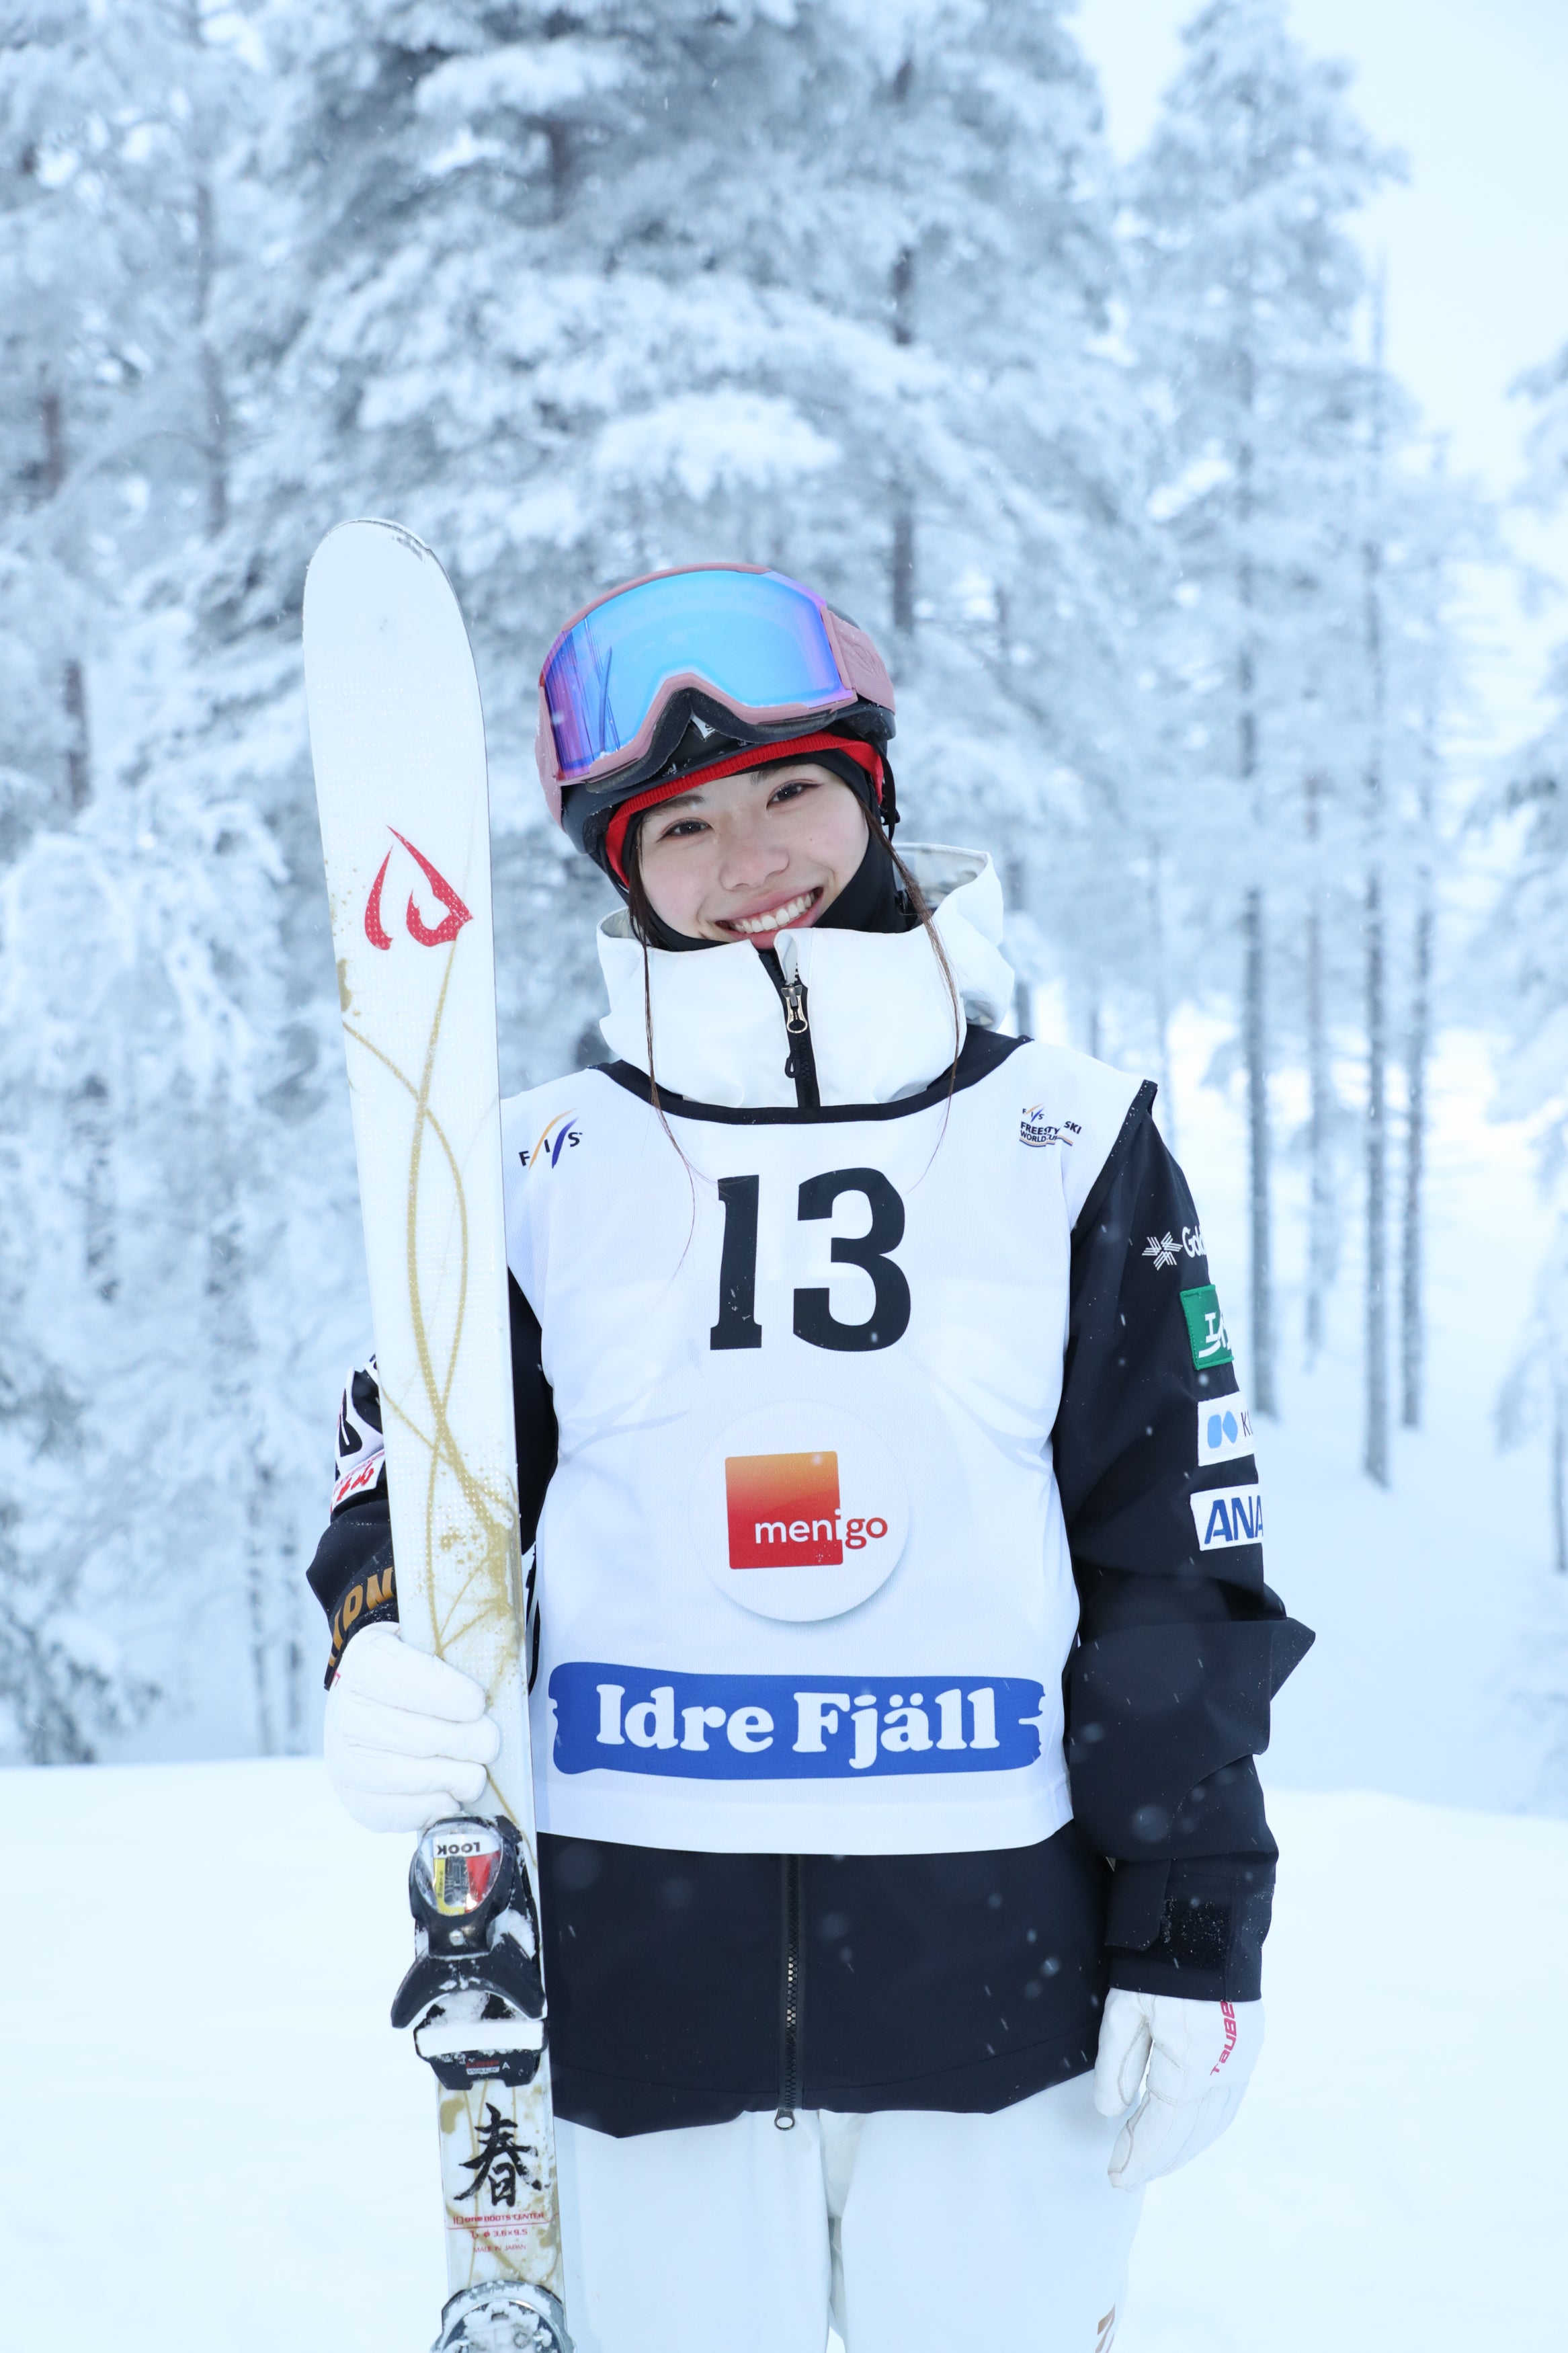 Photo of Haruka Nakao - Mogul Skier